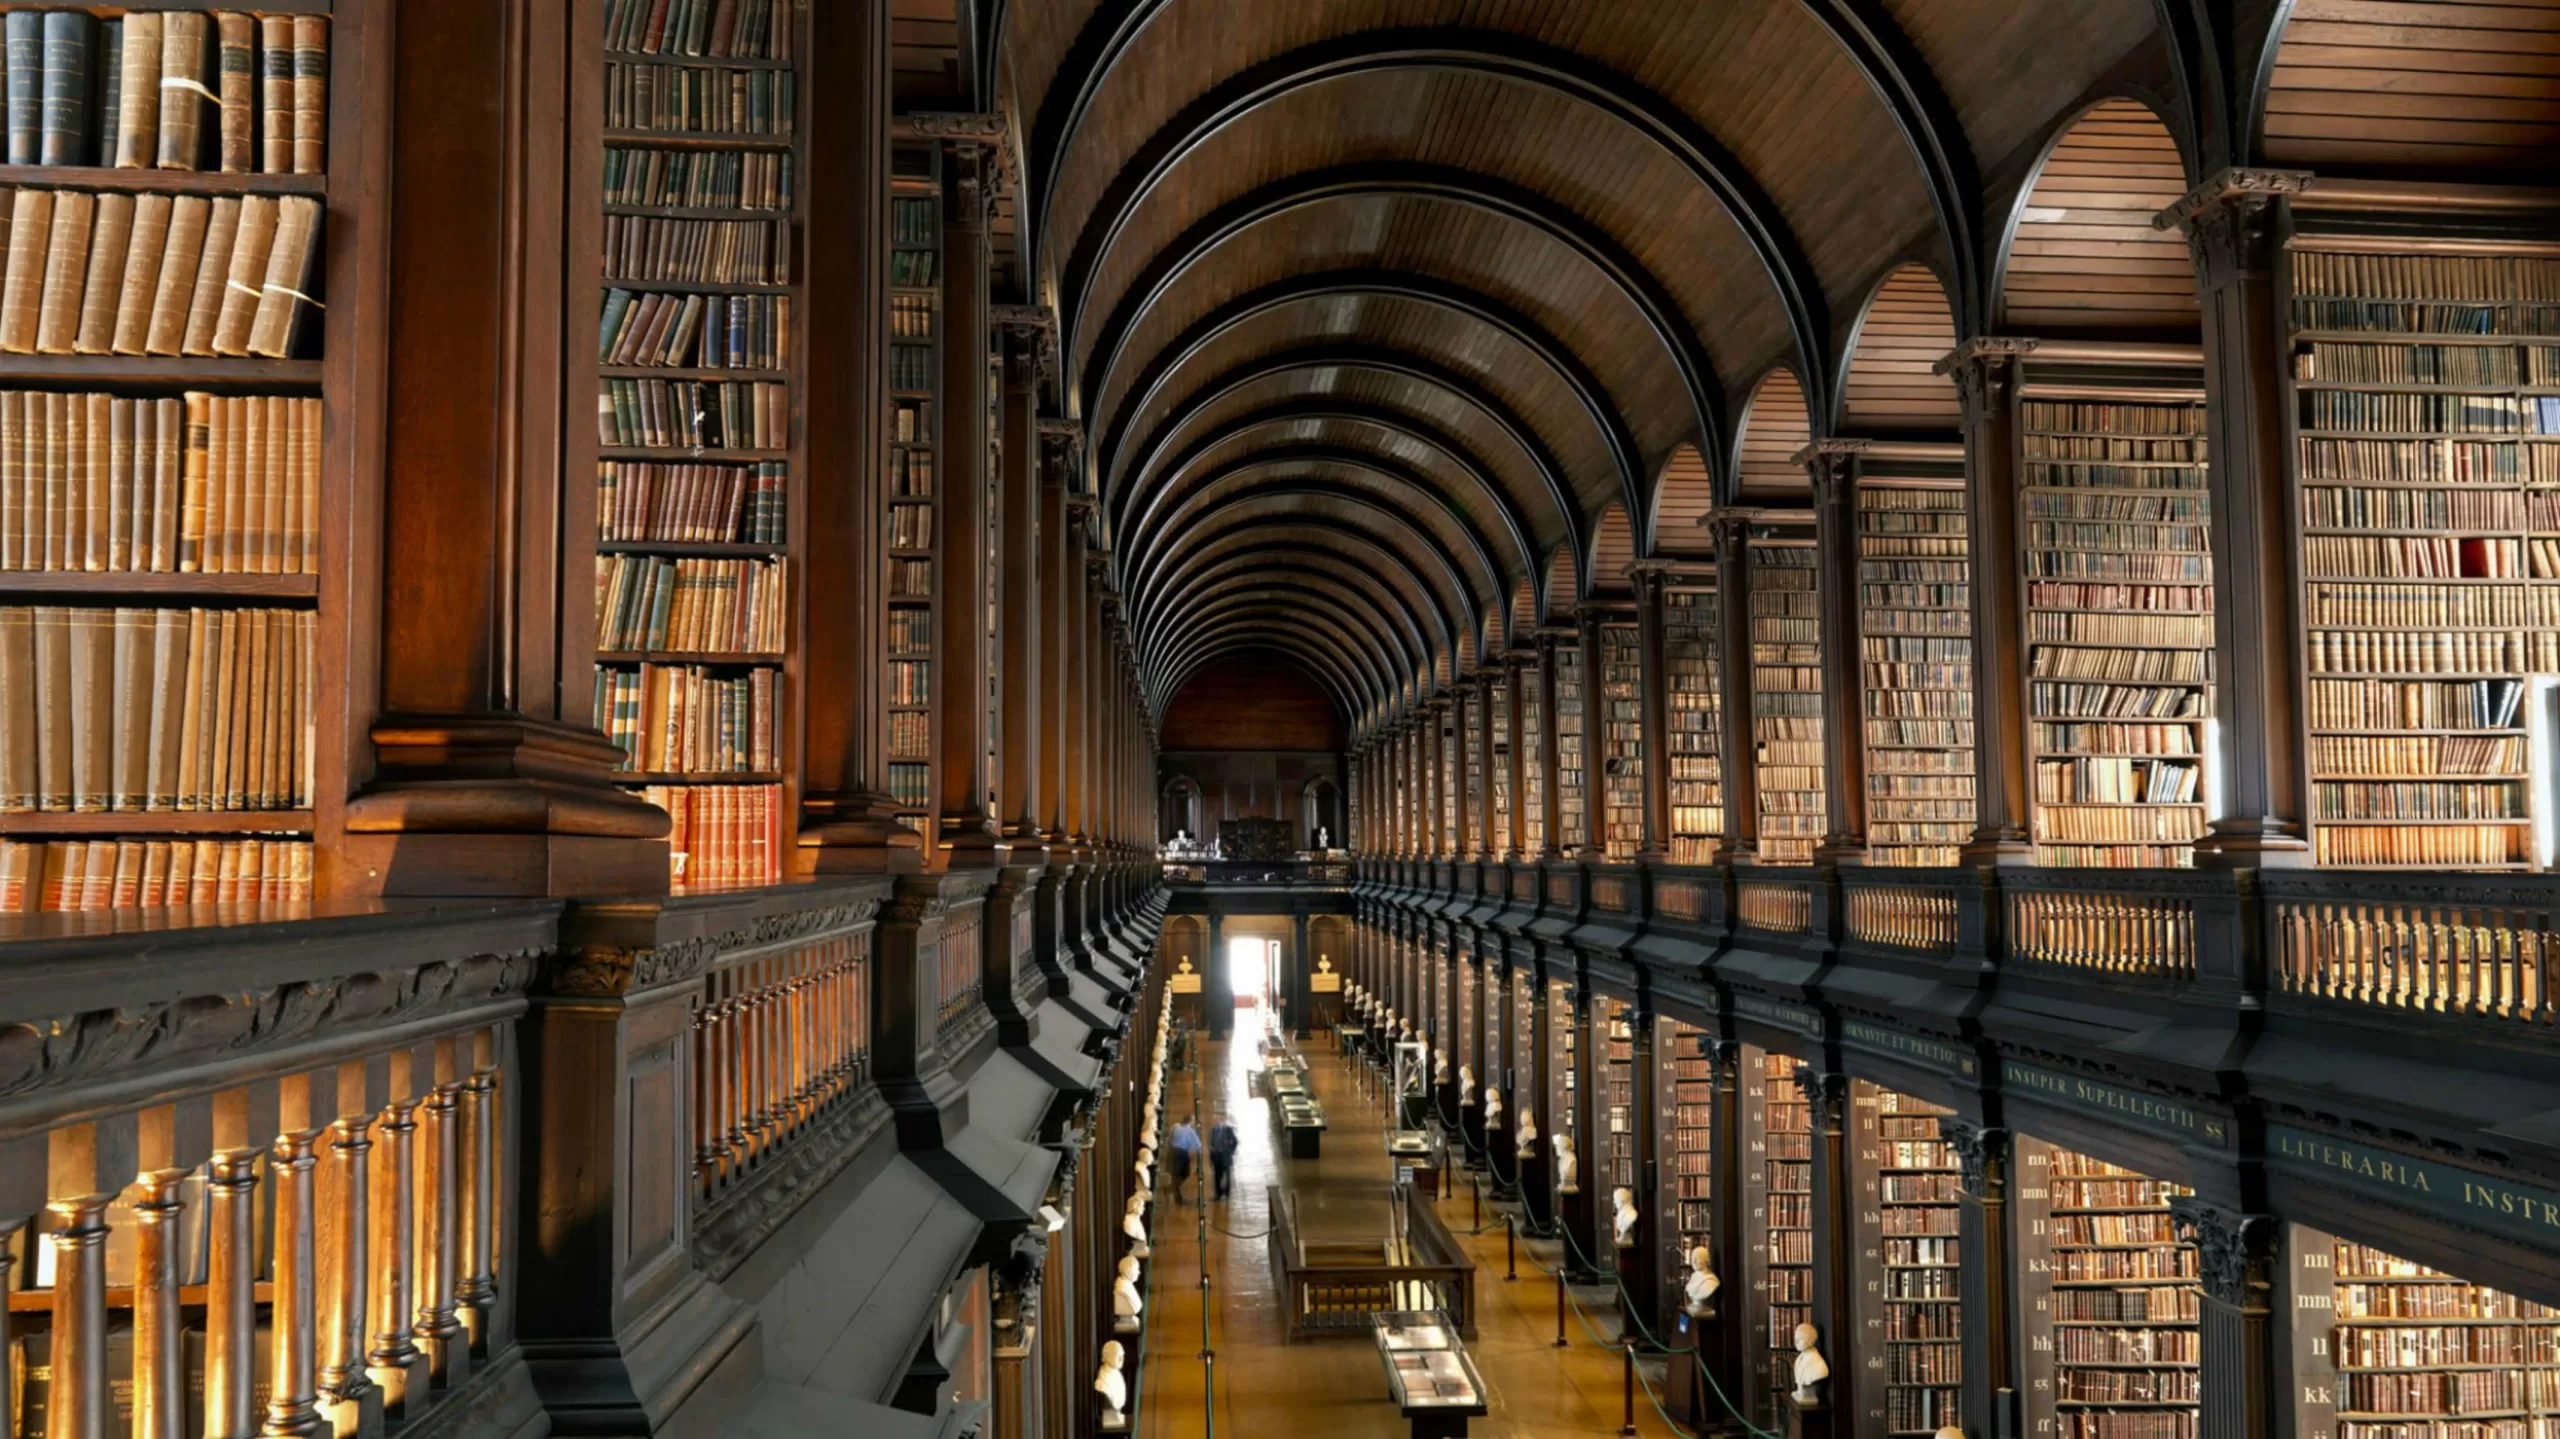 Page library. Библиотека Тринити-колледжа в Дублине. Библиотека Тринити-колледжа, Дублин, Ирландия. Тринити-колледж в Дублине, Ирландия. Библиотека Тринити-колледжа в Кембридже.